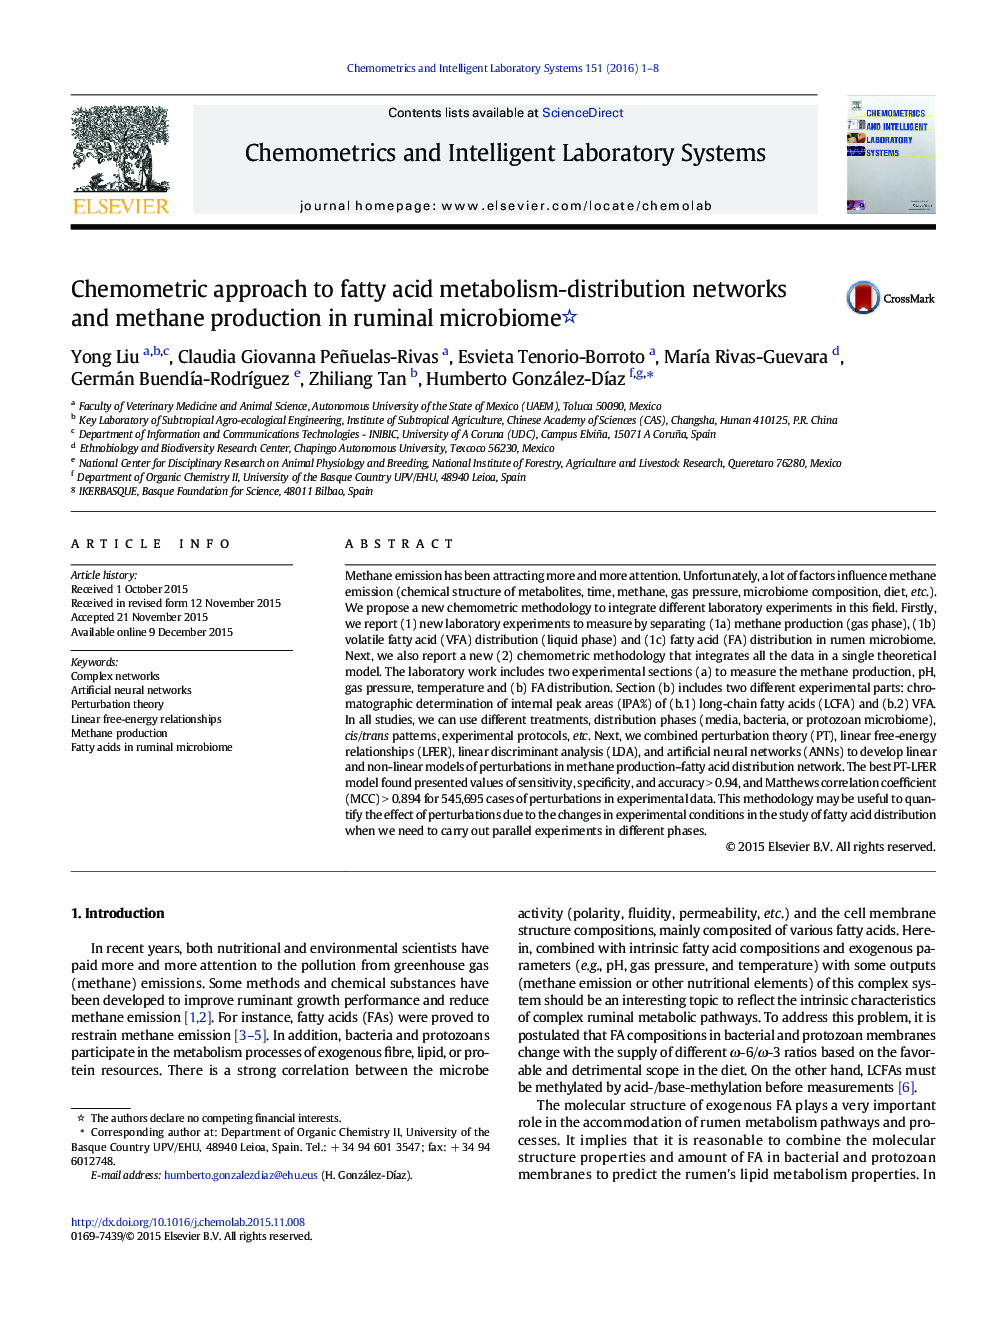 رویکرد شیمیایی به شبکه های توزیع متابولیسم اسید چرب و تولید متان در میکروبیوم شوری 